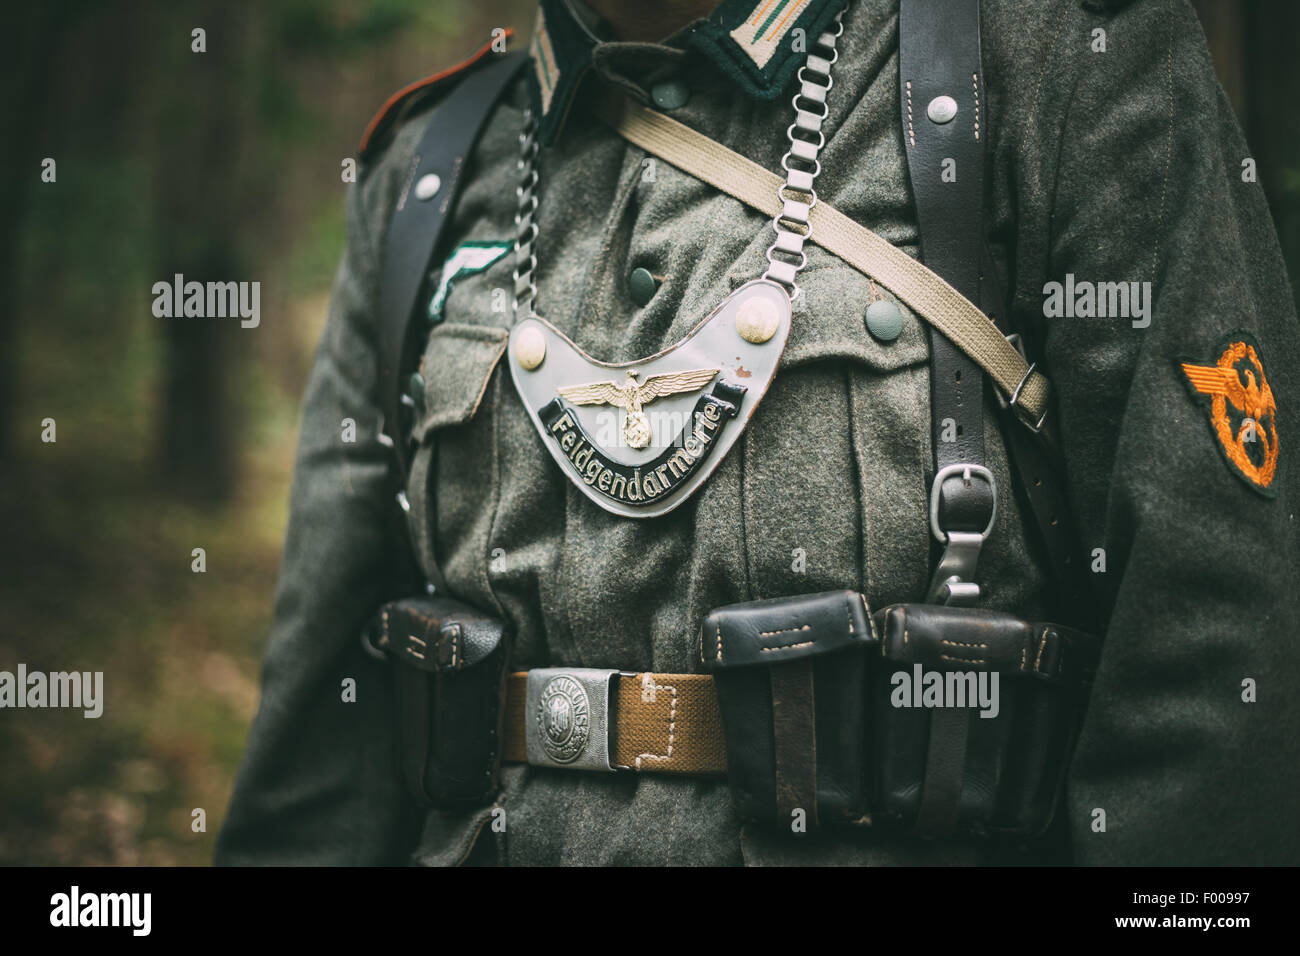 Nicht identifizierte Re-Enactor als Soldat verkleidet. Deutsche militärische Auszeichnung auf der Uniform eines deutschen Soldaten. Stockfoto